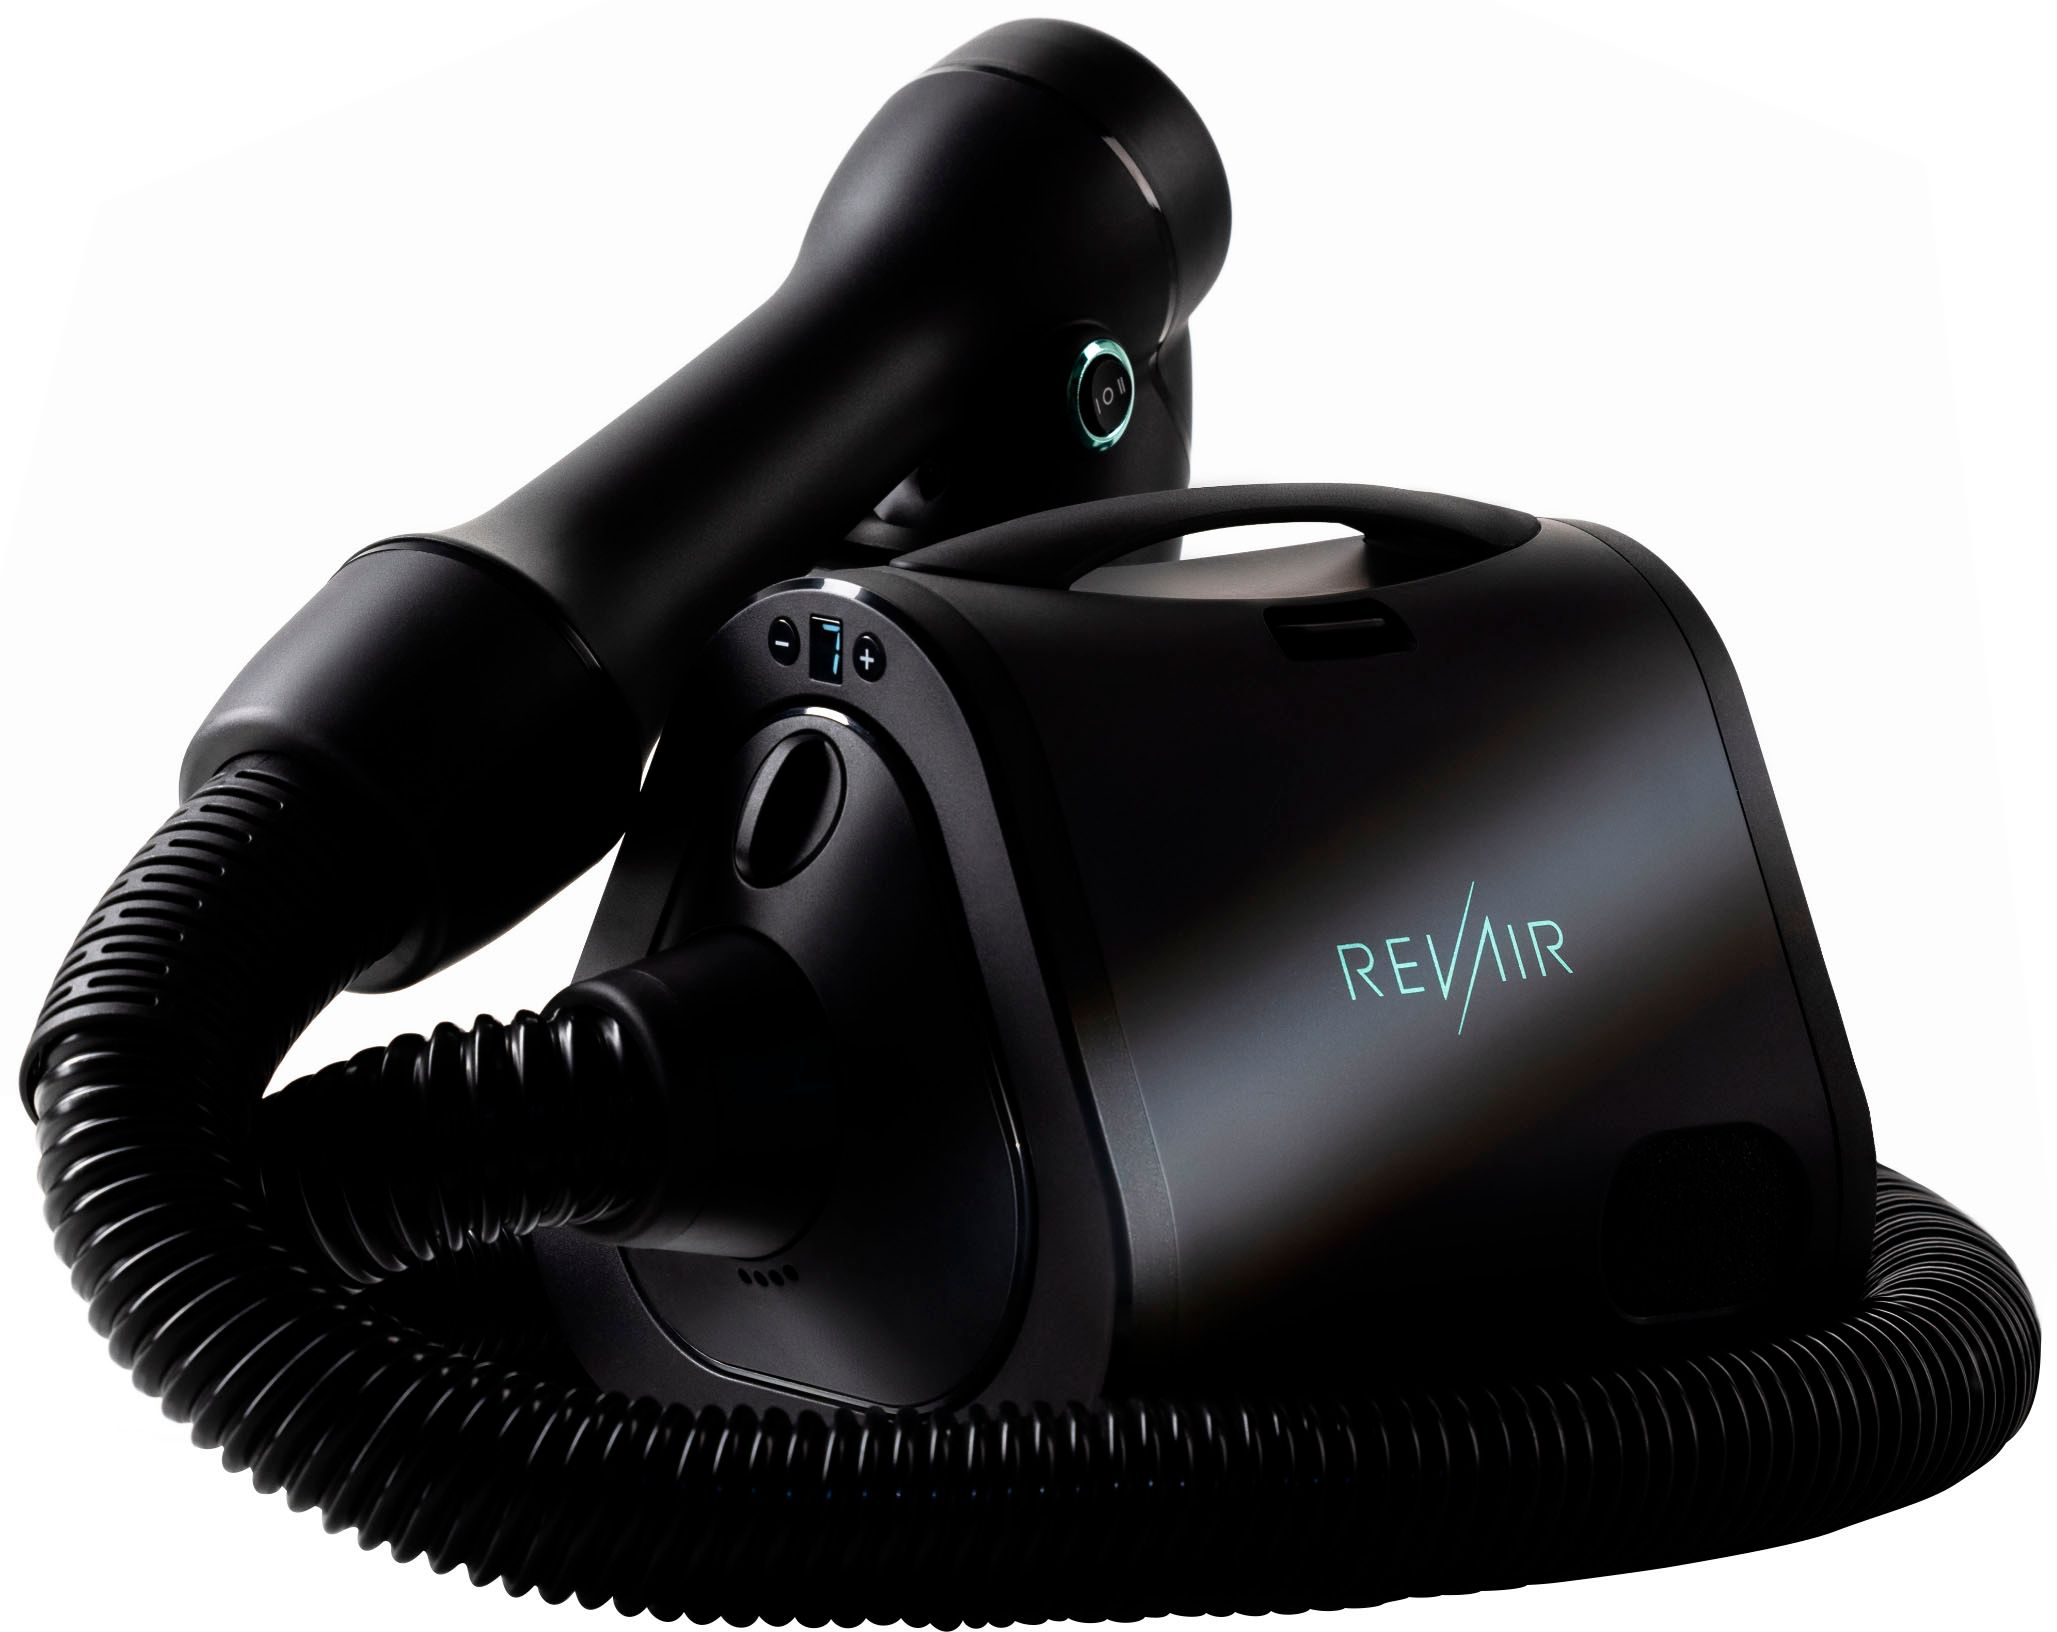 RevAir Reverse-Air Hair Dryer Black RA90020 - Best Buy | Best Buy U.S.